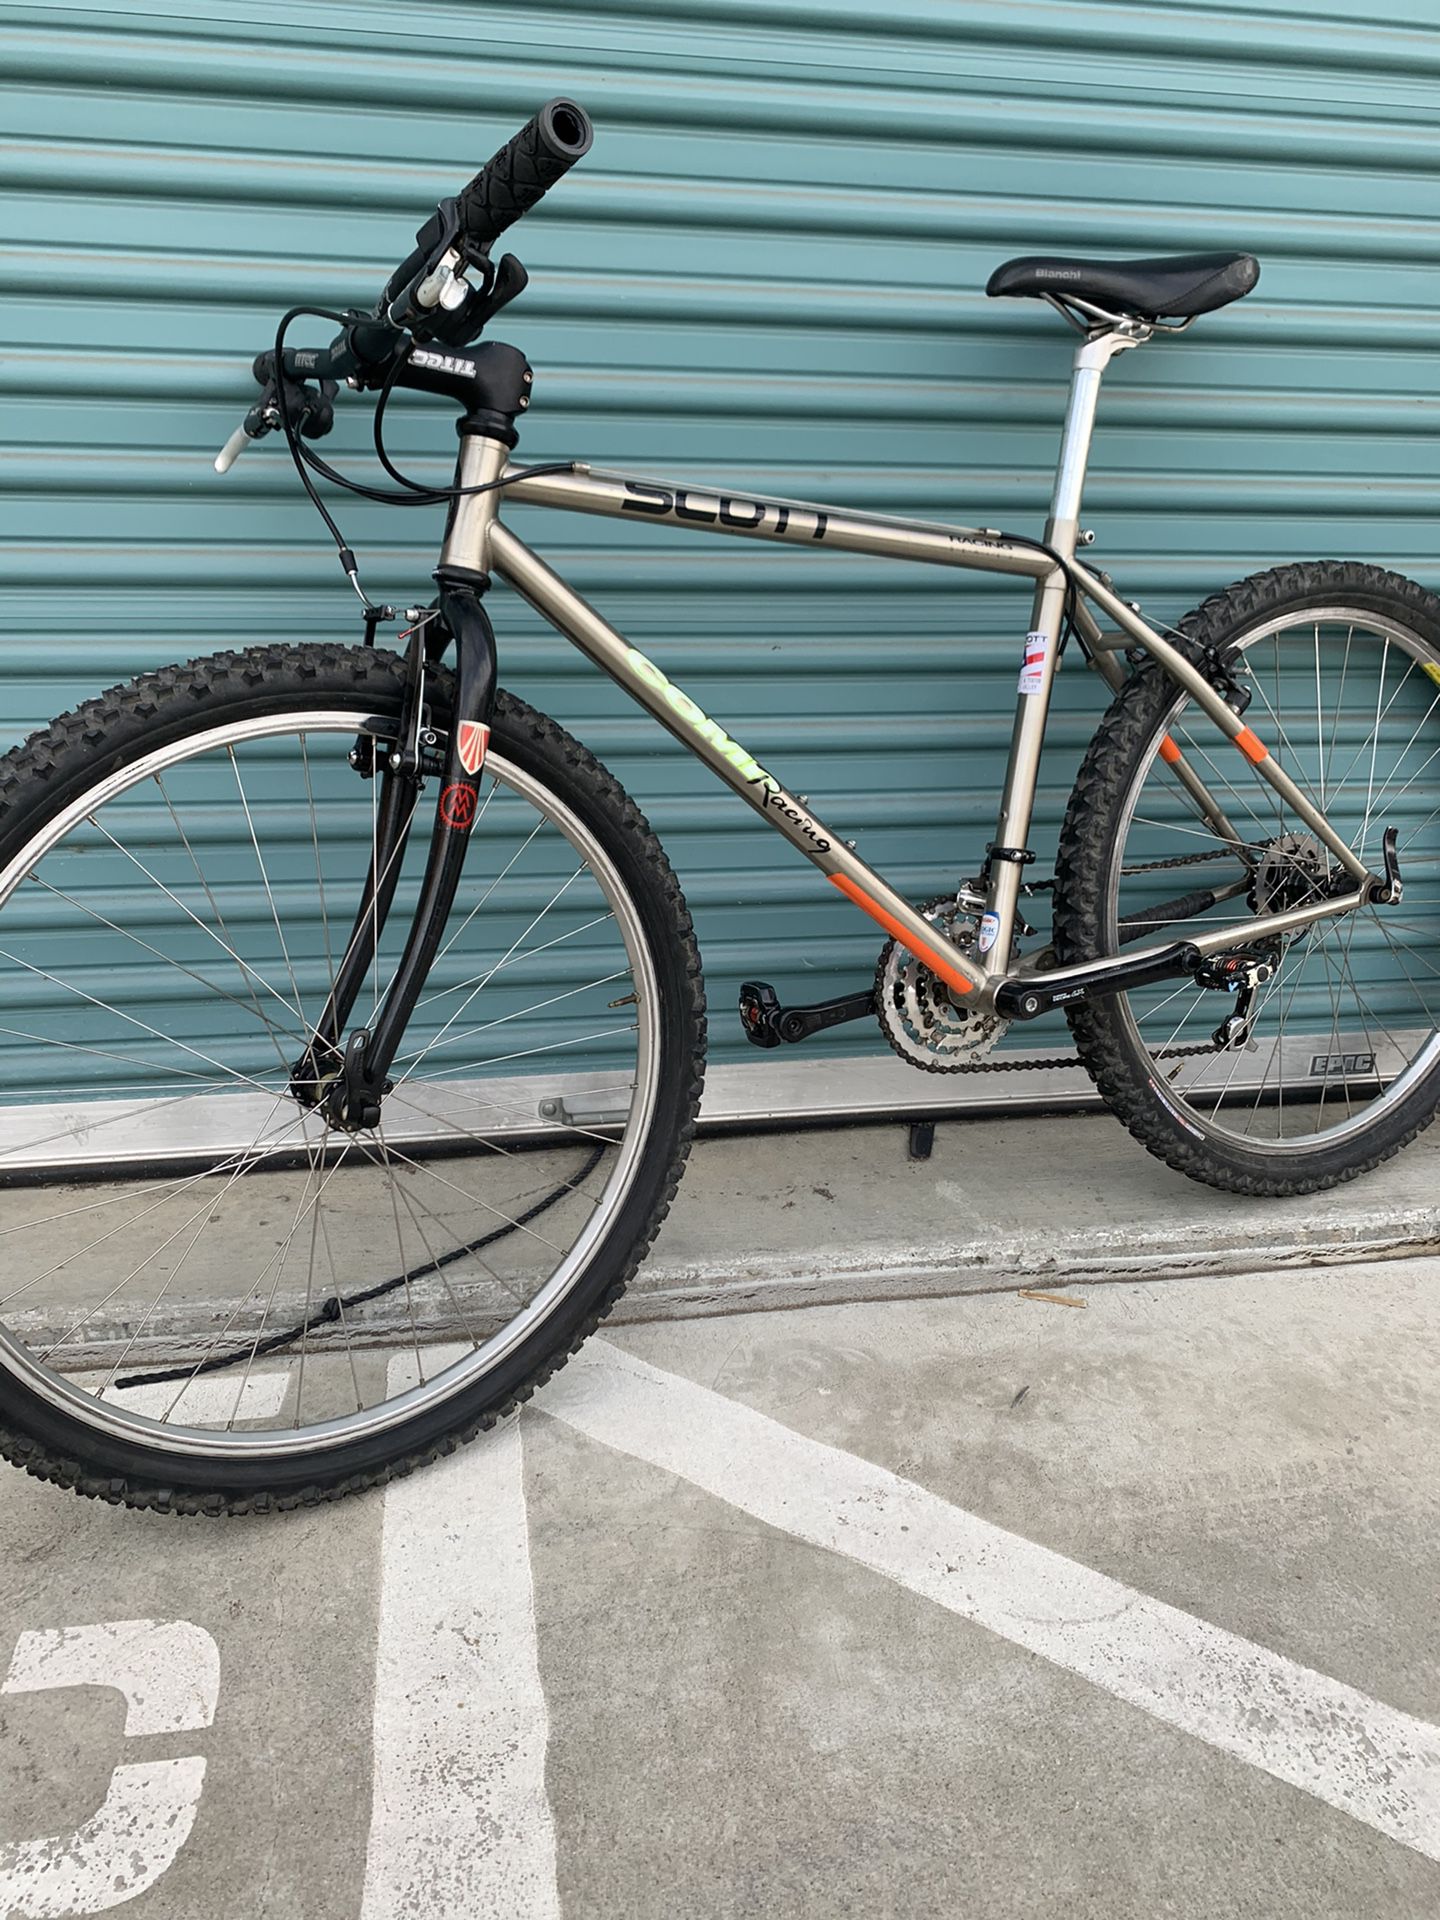 Scott mountain bike